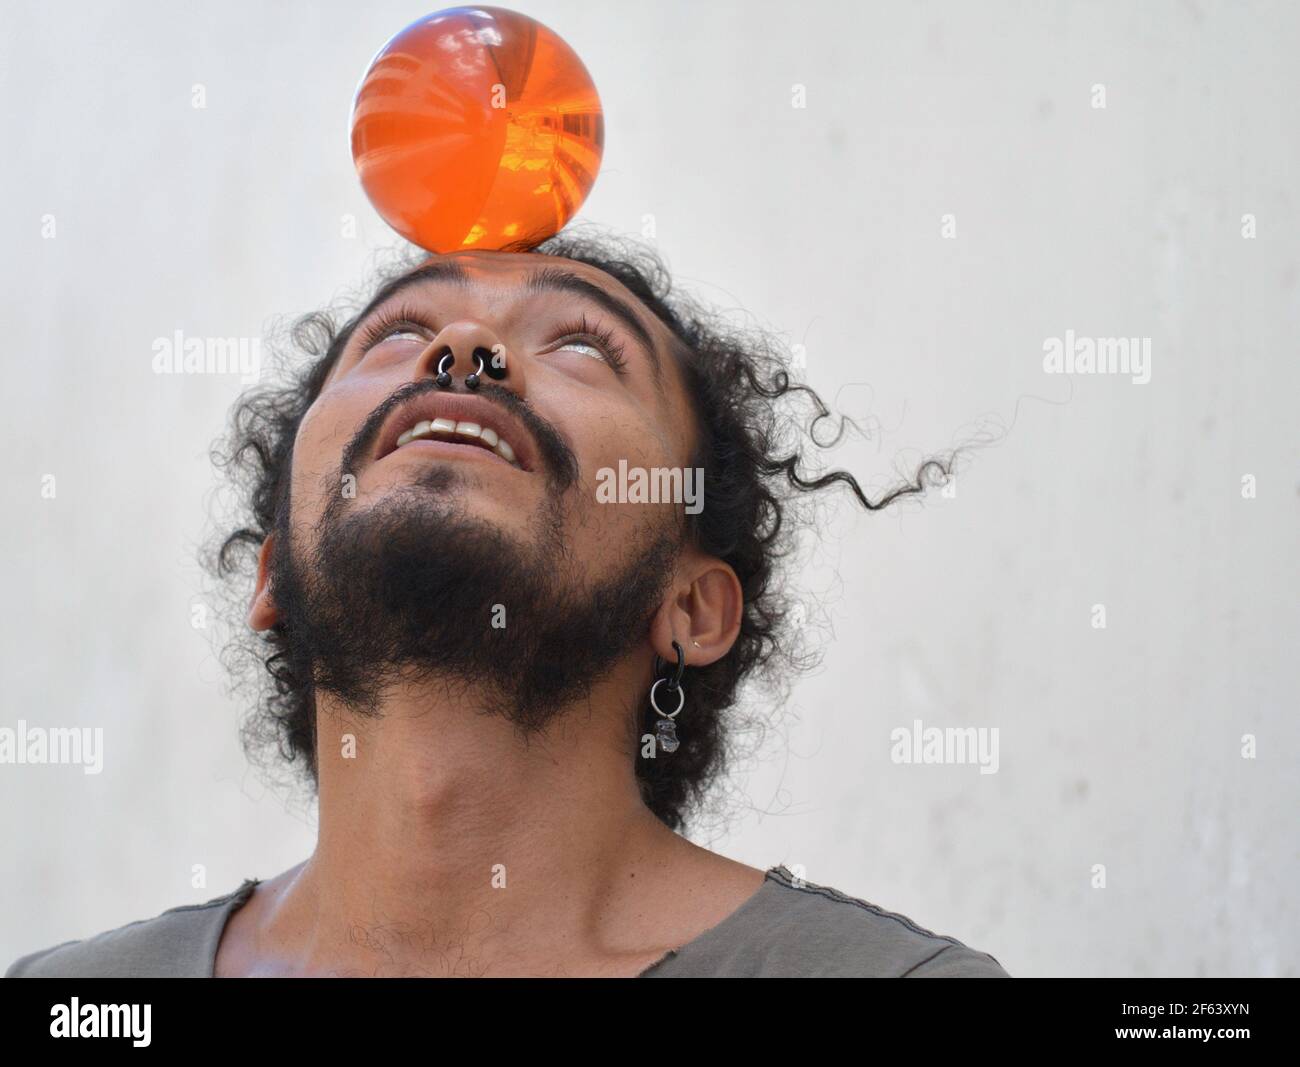 Beau jeune mexicain avec le nez de la cloison bijoux équilibre une boule en plastique orange sur son front. Banque D'Images